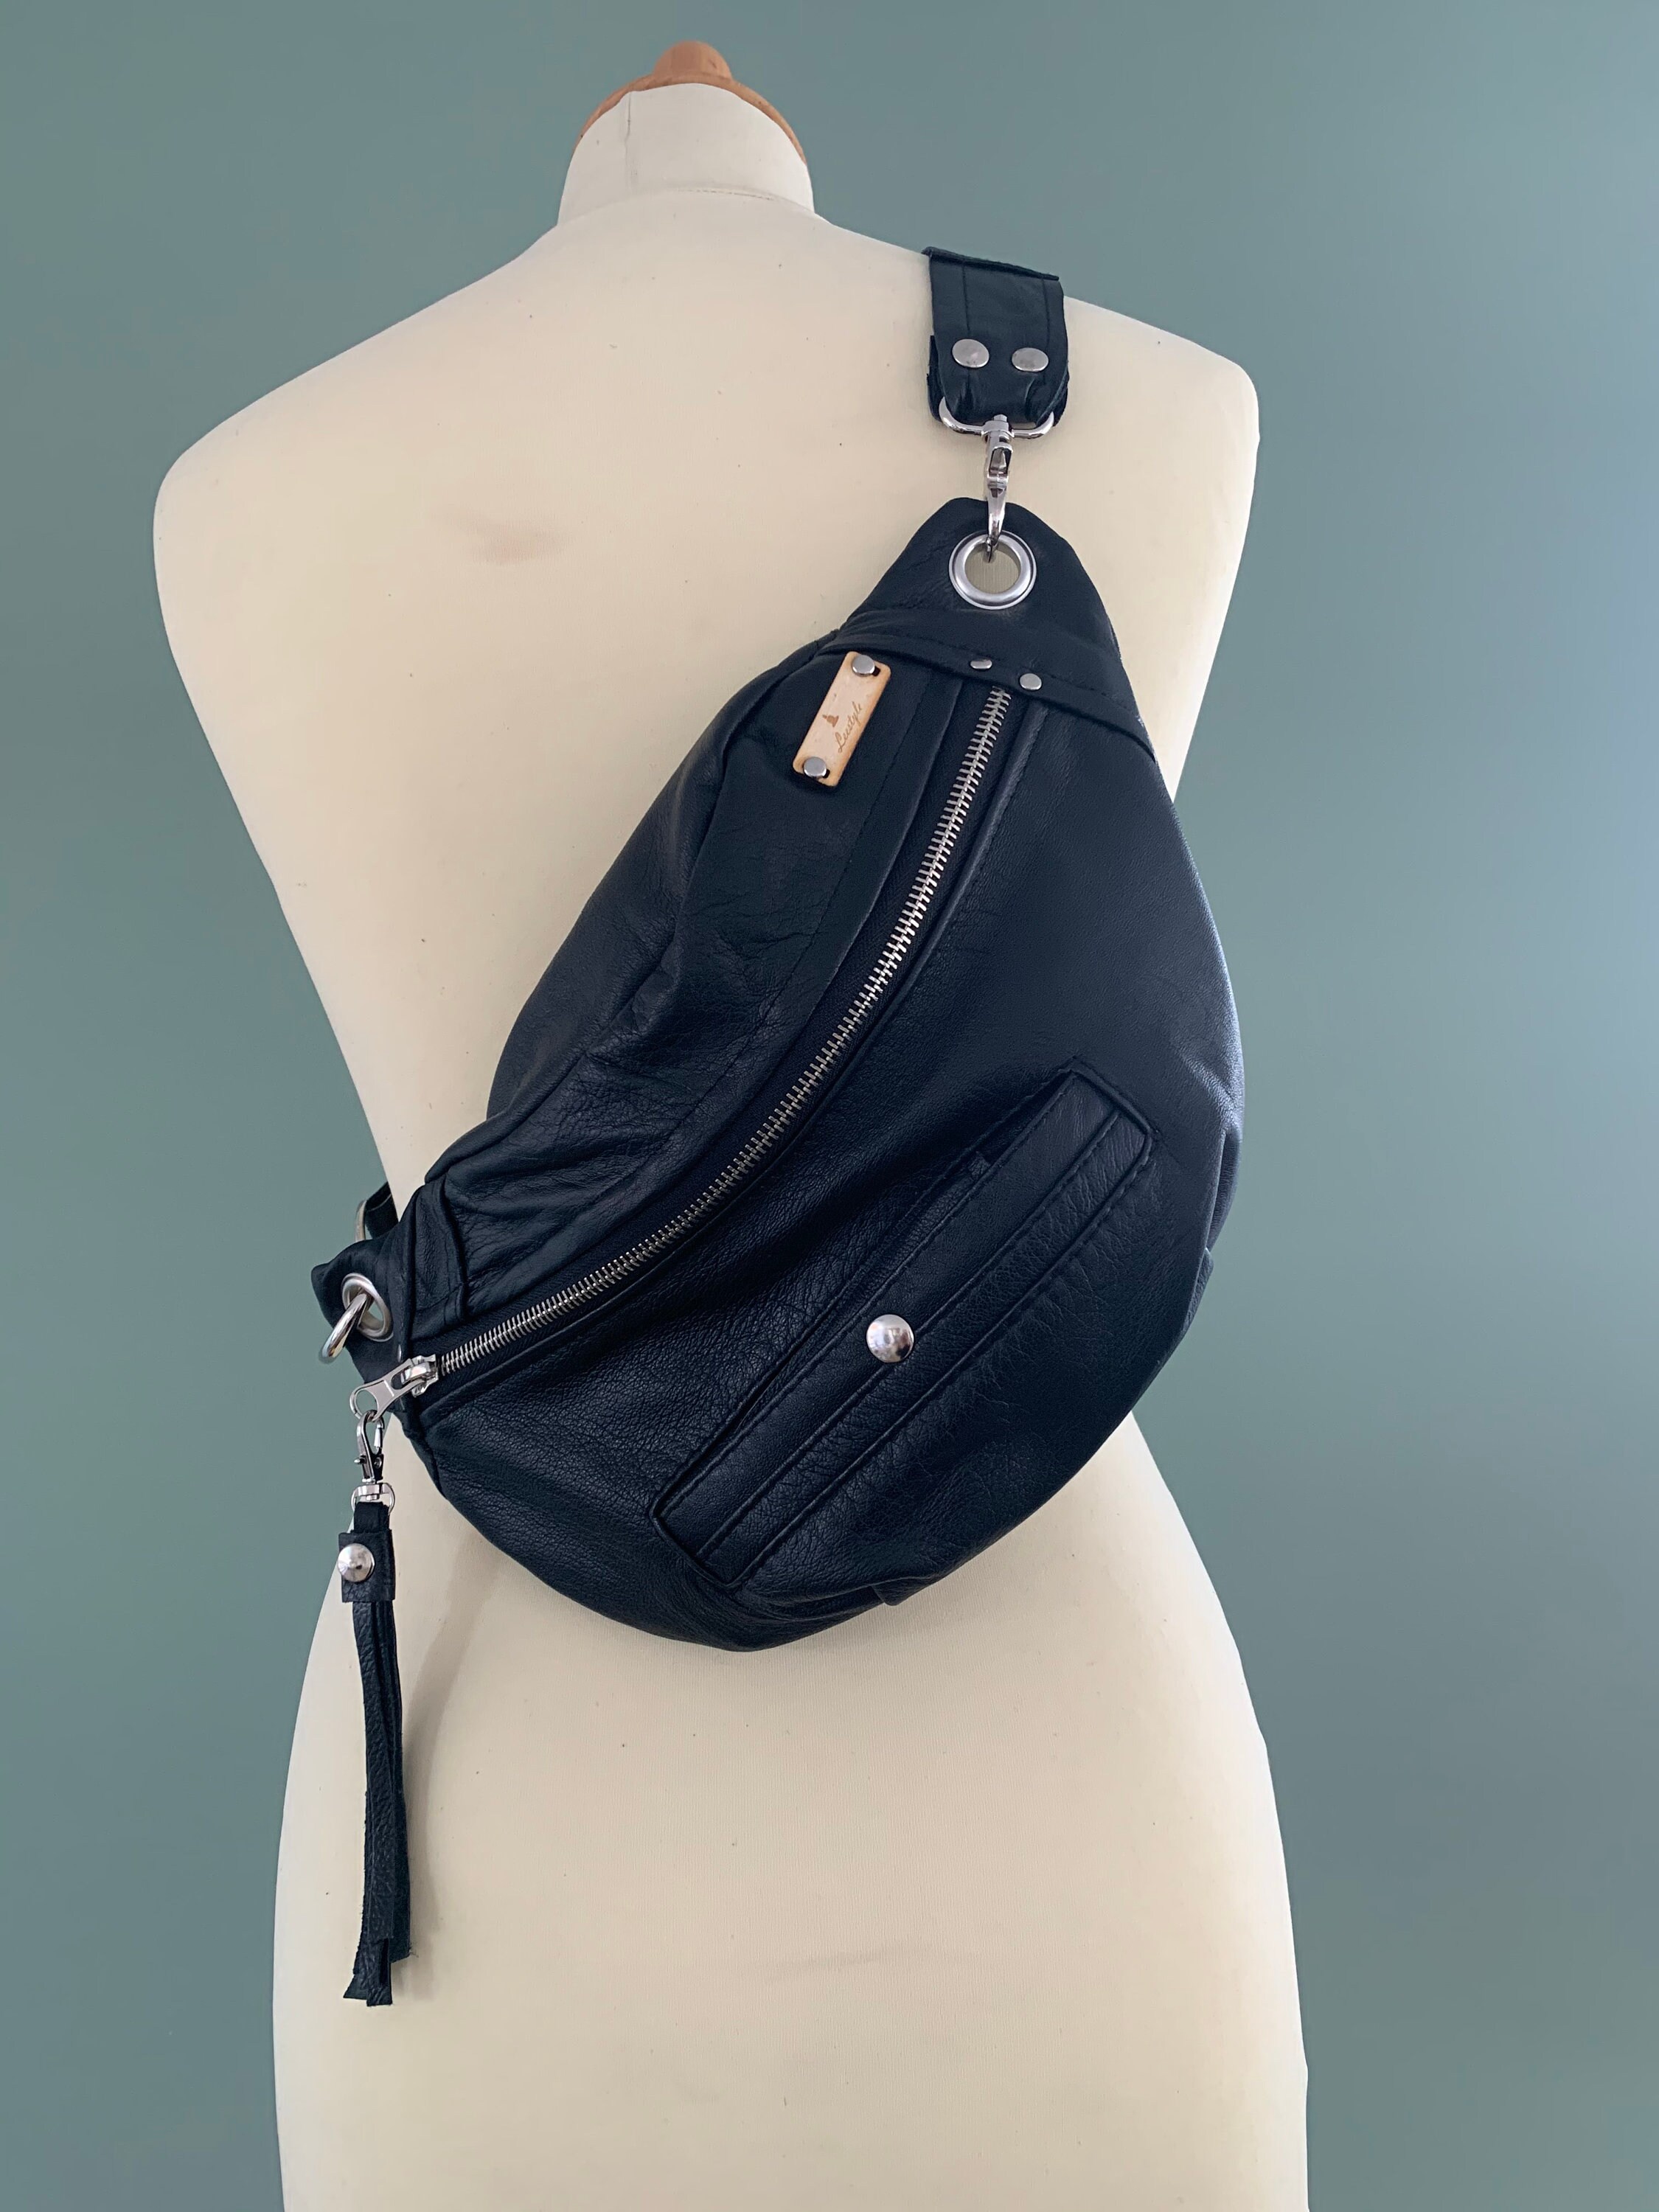 Fanny Pack bumbag beltbag black leather hobo bag belly bag crossbag